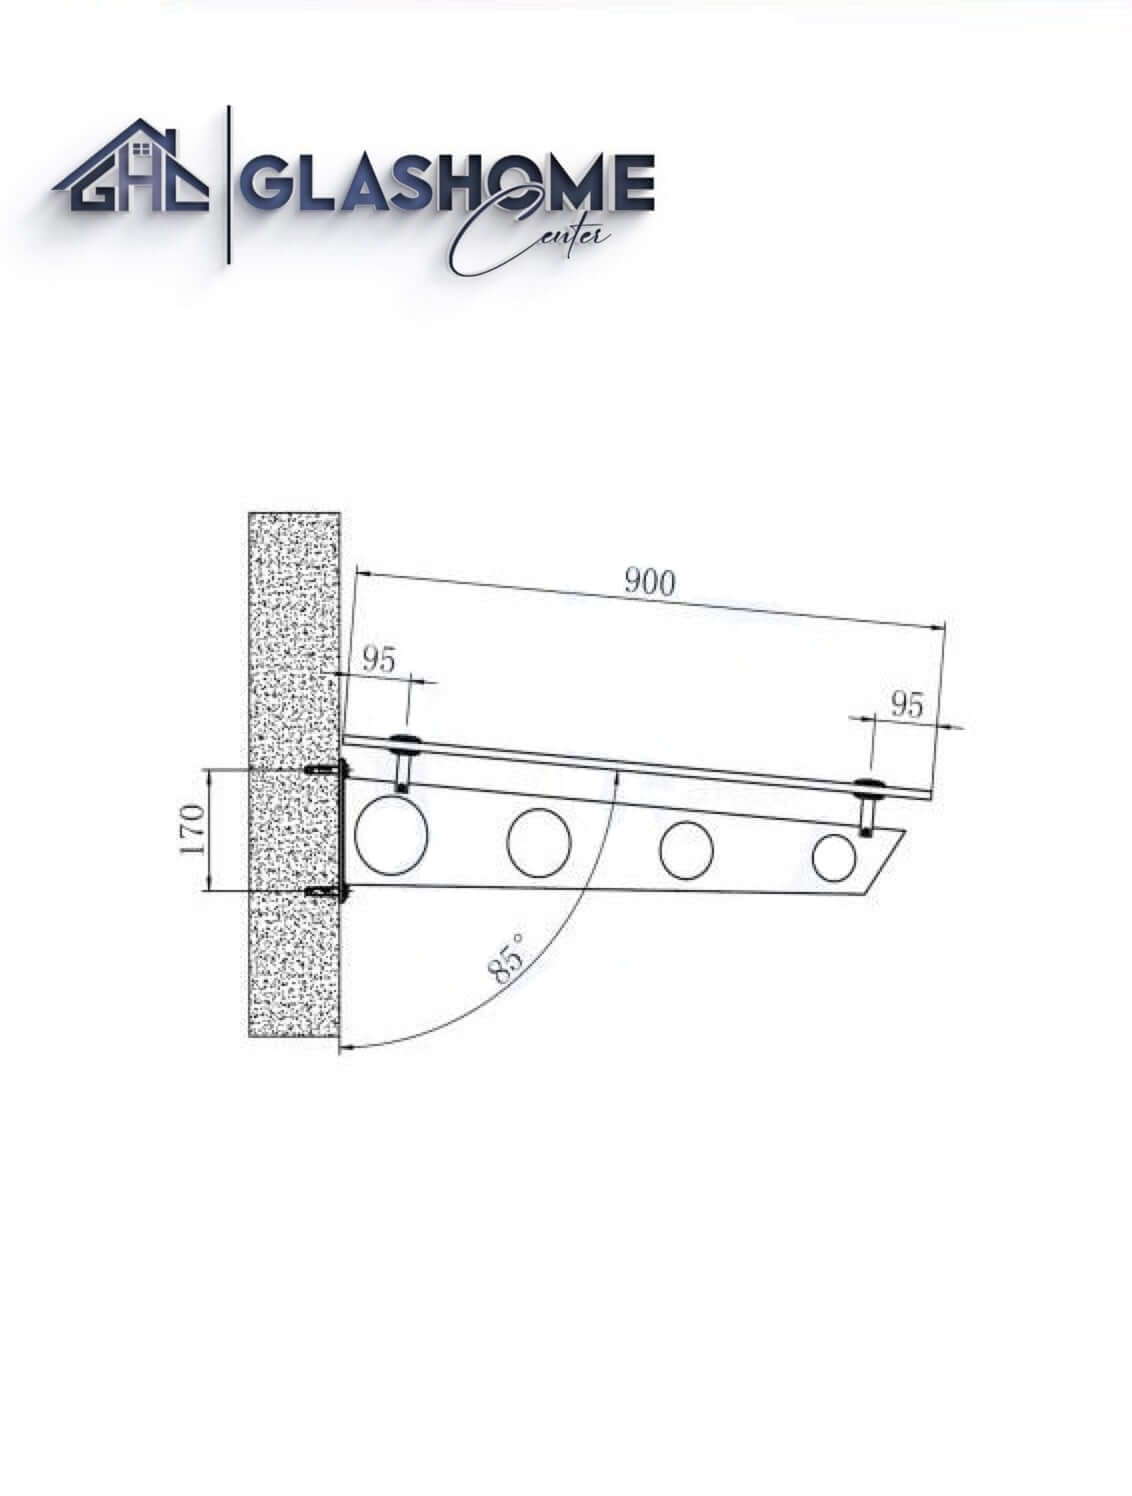 GlasHomeCenter - tettoia in vetro - vetro trasparente - 130x90 cm - vetro di sicurezza stratificato 13,1 mm - incl.2 staffe in acciaio inox nero variante "Stoccolma"